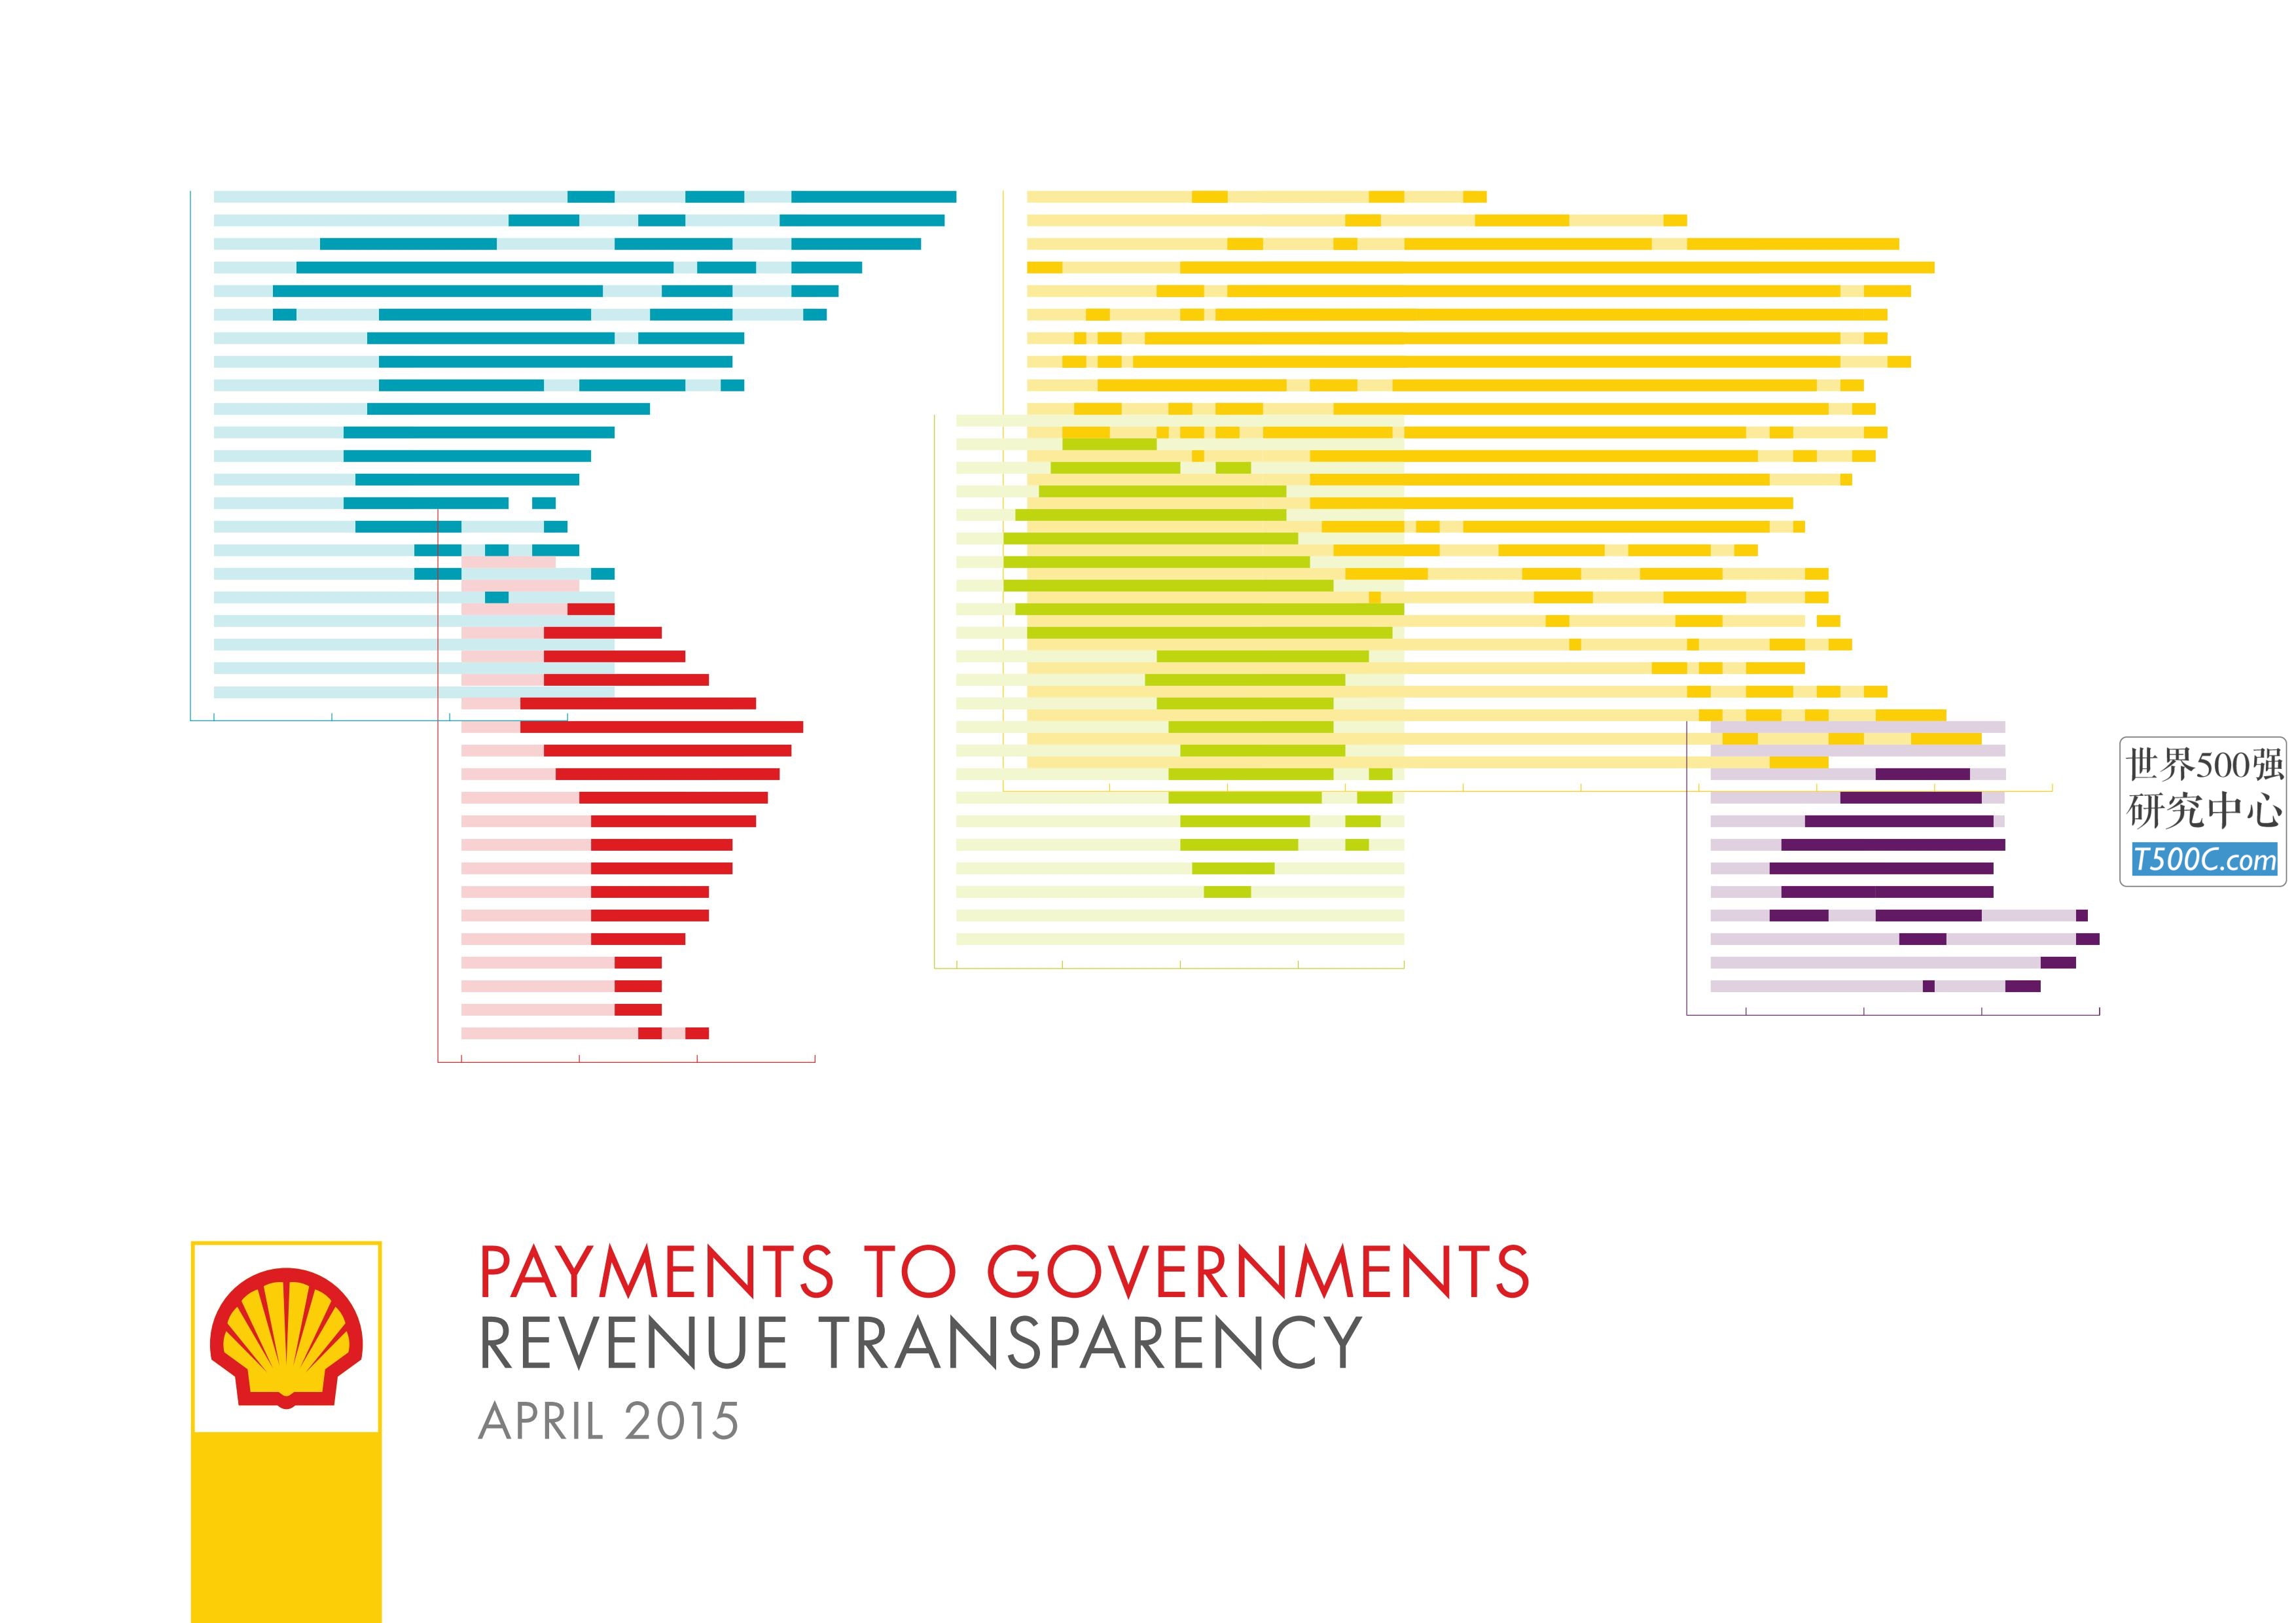 壳牌石油Shell_见解宣传册Brochure_T500C.com_payments-to-governments-brochure-2015.pdf